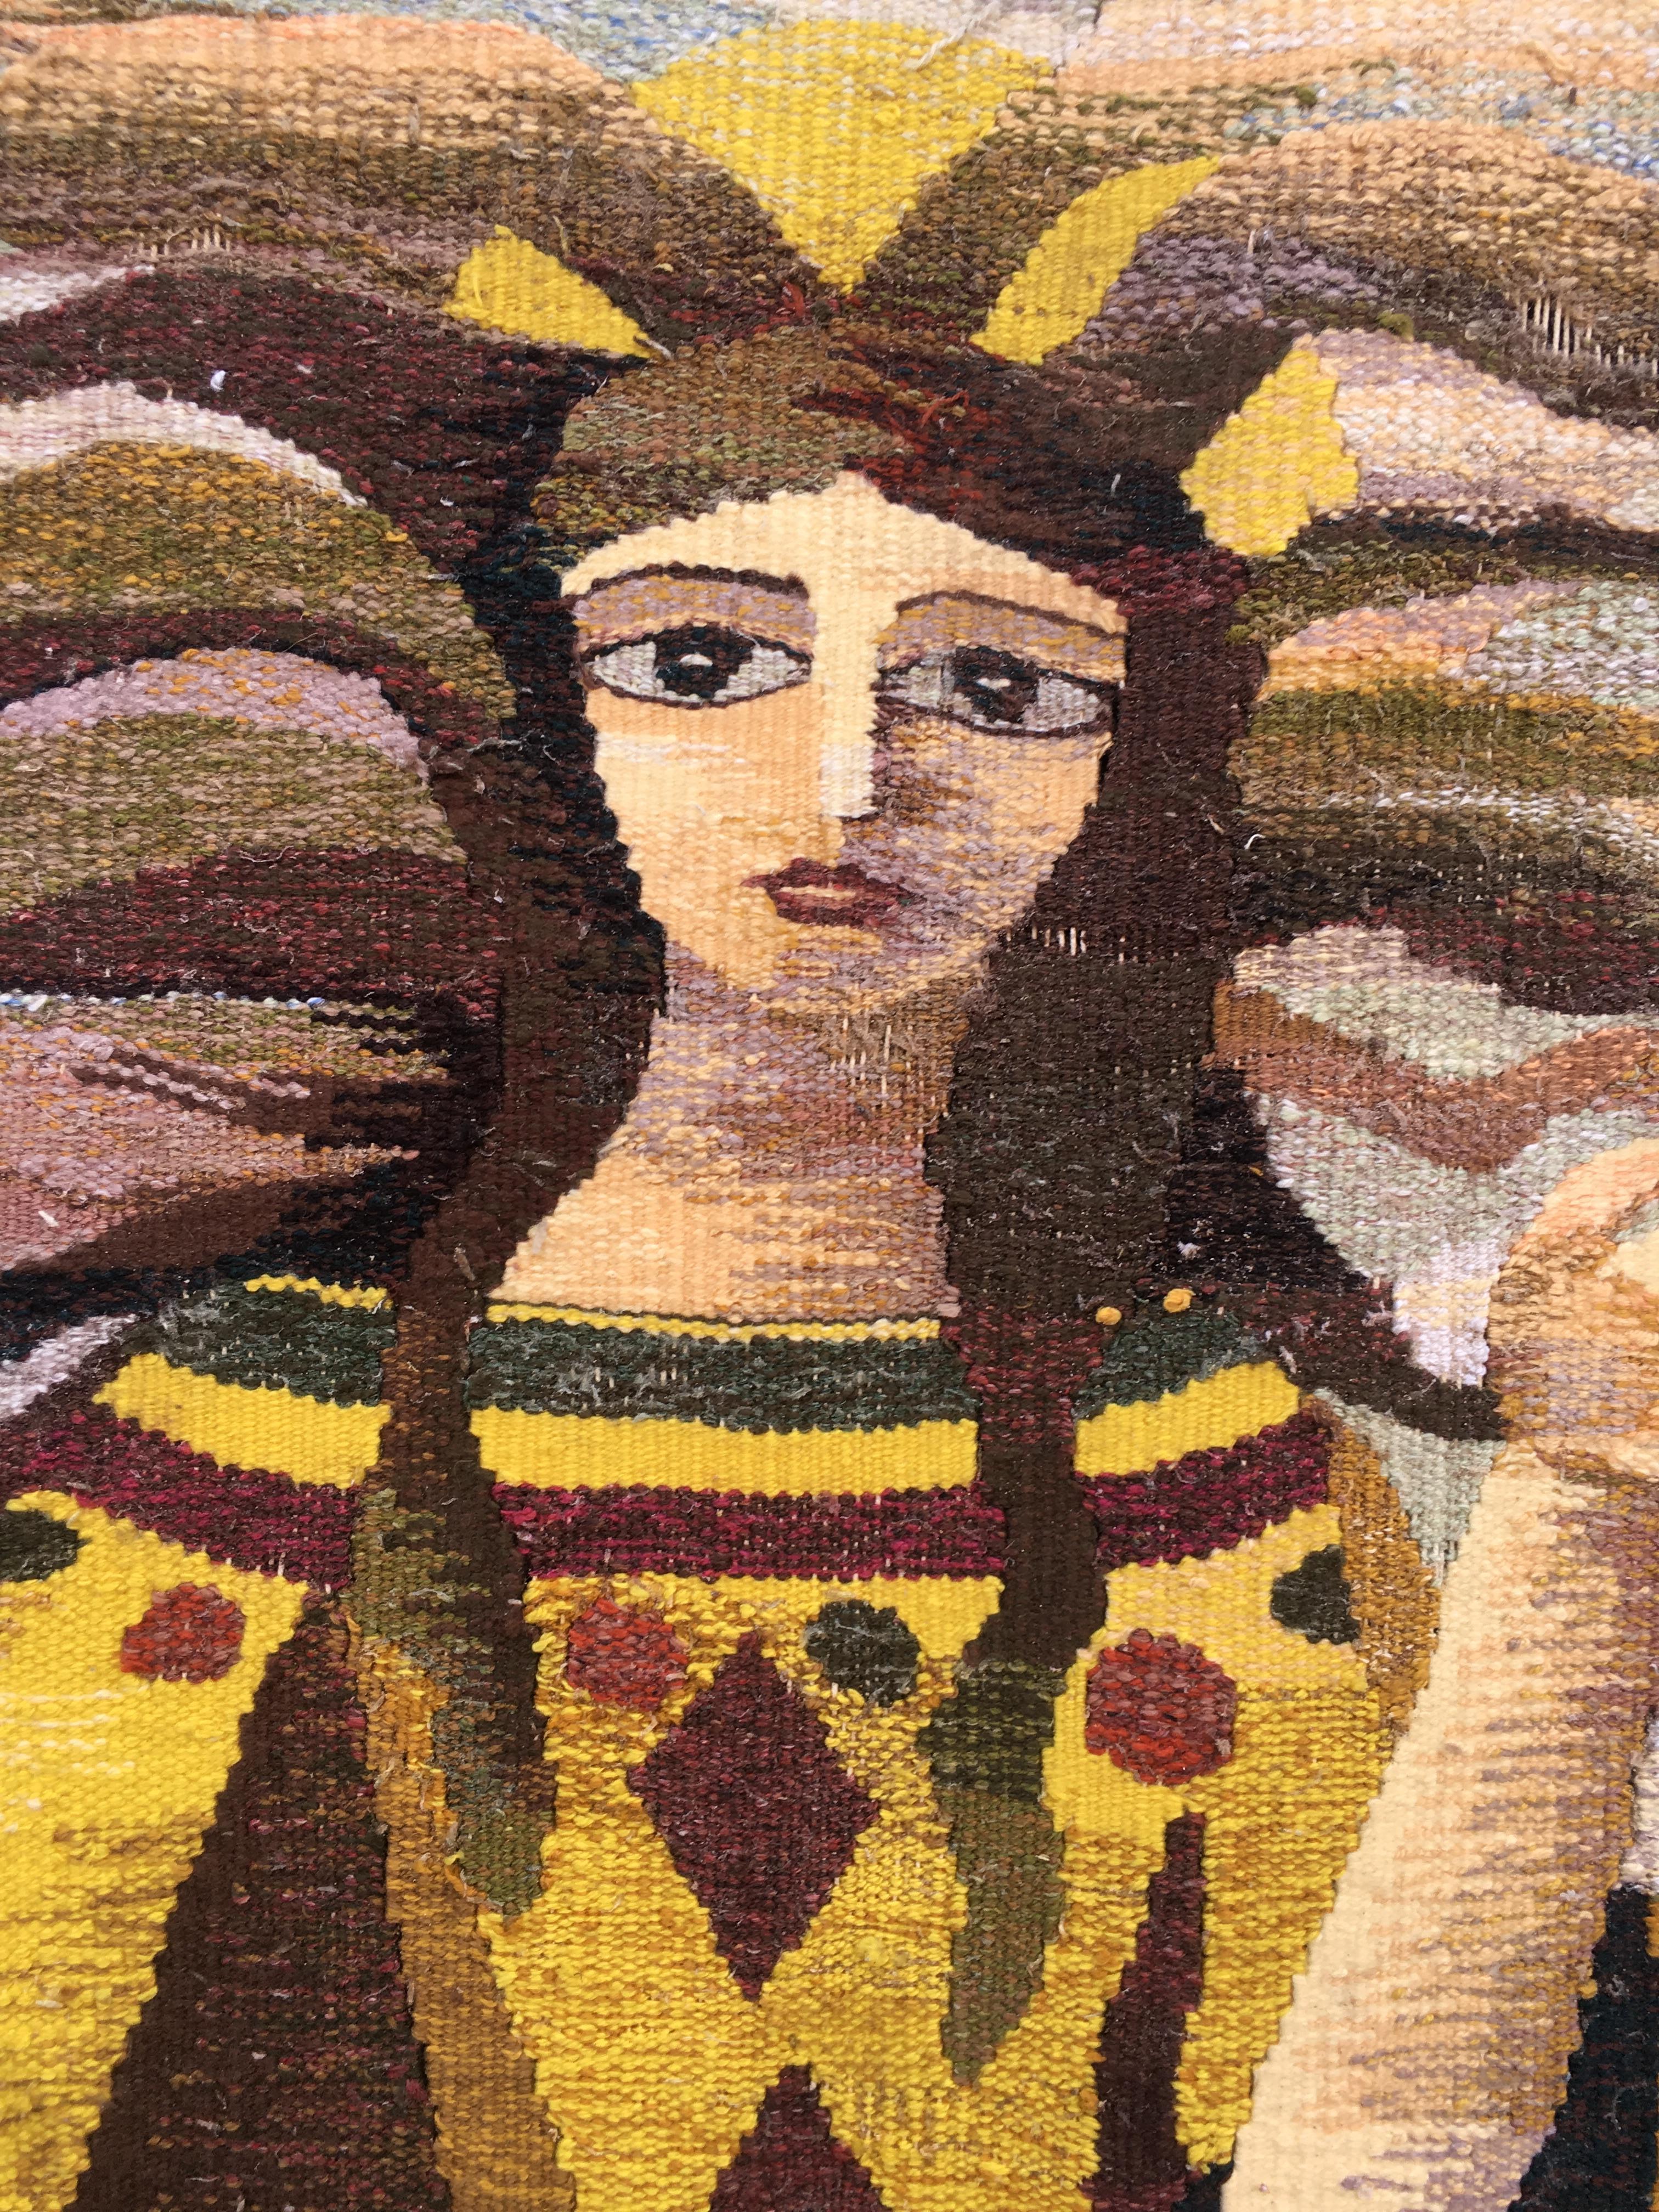 Tapisserie en laine Art déco, vers 1930-1950
Cette tapisserie est composée de pièces de laine tissées et assemblées.
Très bon état, seules quelques franges manquent.